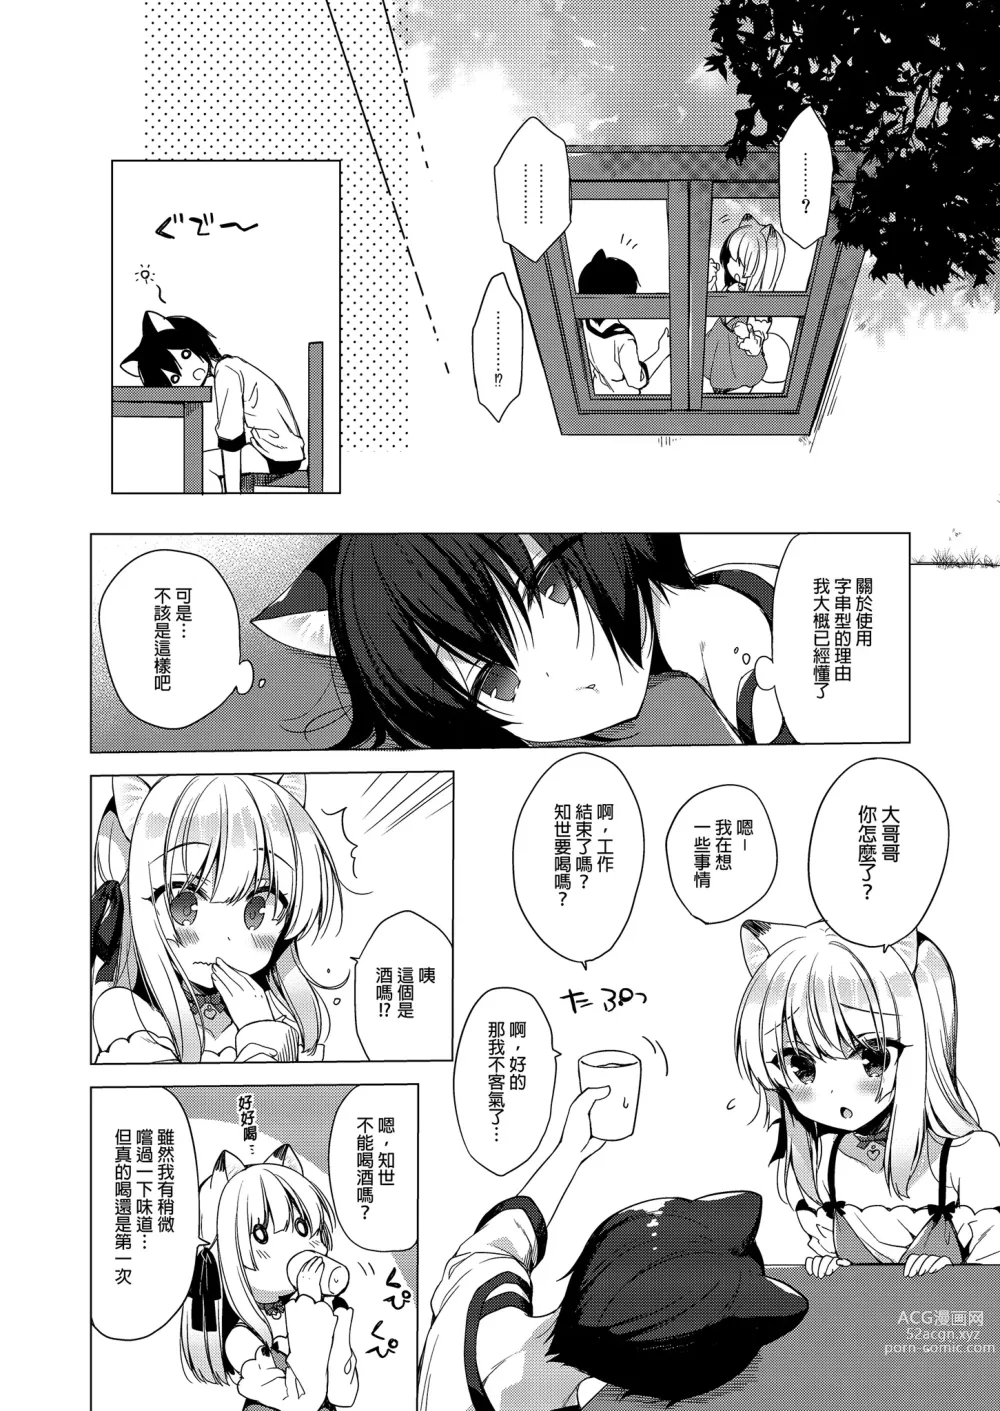 Page 8 of manga Boku no Risou no Isekai Seikatsu Soushuuhen 02 (decensored)